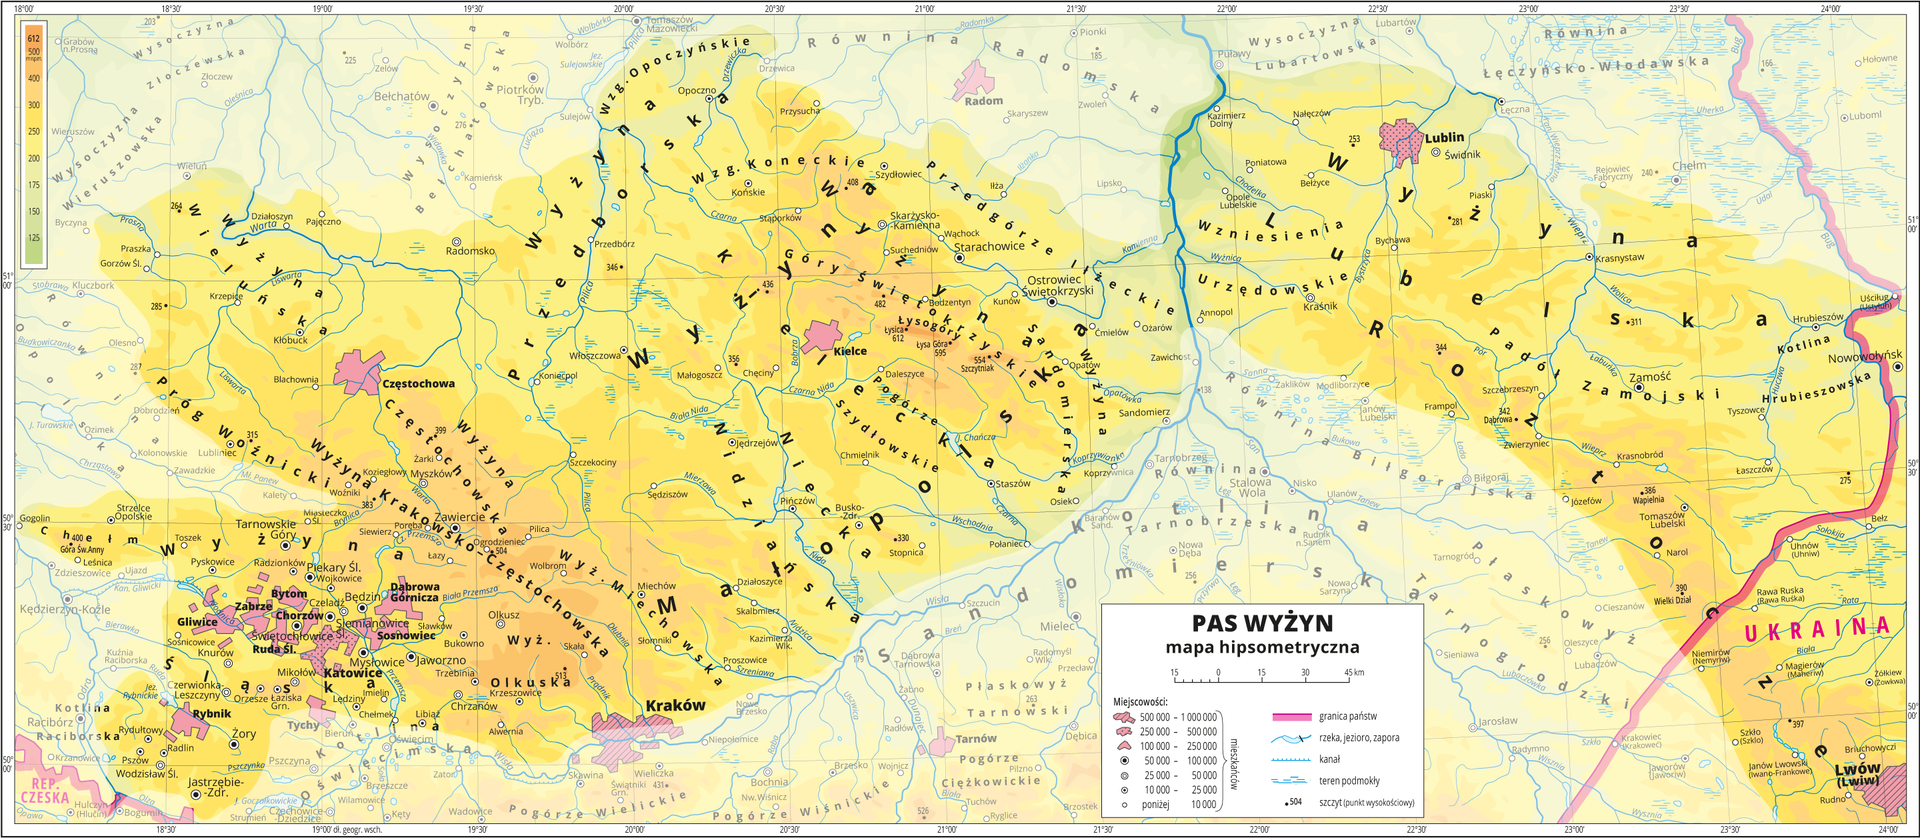 Ilustracja przedstawia fragment mapy hipsometrycznej Polski obejmujący pas wyżyn. W obrębie mapy treść niedotyczącą pasa wyżyn została zamglona. Na mapie dominuje kolor żółty oznaczający wyżyny. Oznaczono i opisano miasta, rzeki, jeziora i szczyty. Opisano wyżyny i inne krainy geograficzne oraz państwa sąsiadujące z Polską. Czerwoną wstążko zaznaczono granice państw. Dookoła mapy w białej ramce opisano współrzędne geograficzne co trzydzieści minut. W legendzie opisano znaki użyte na mapie.